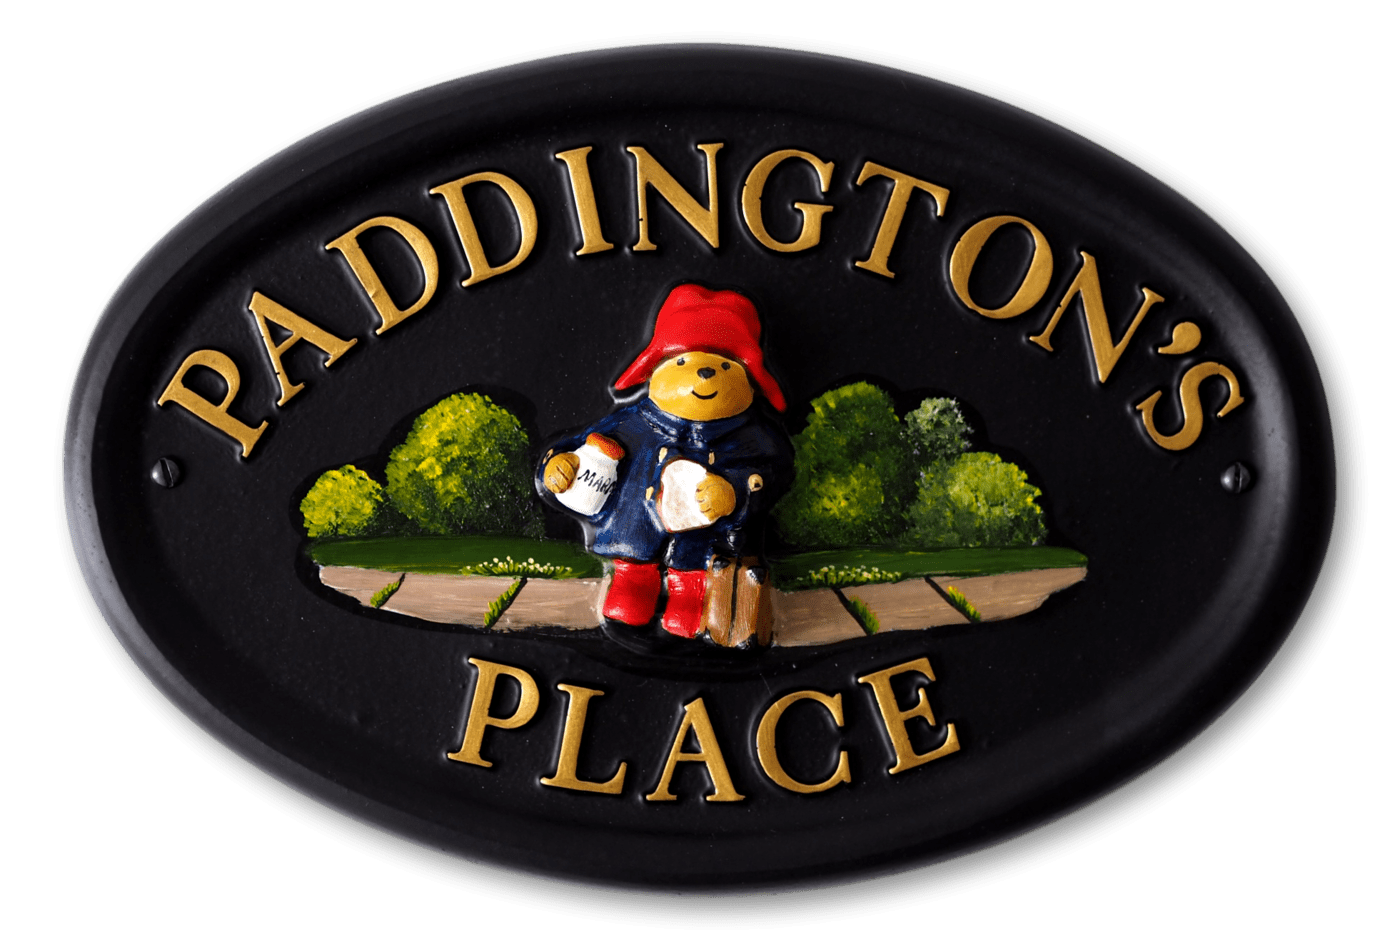 Paddington Bear house sign